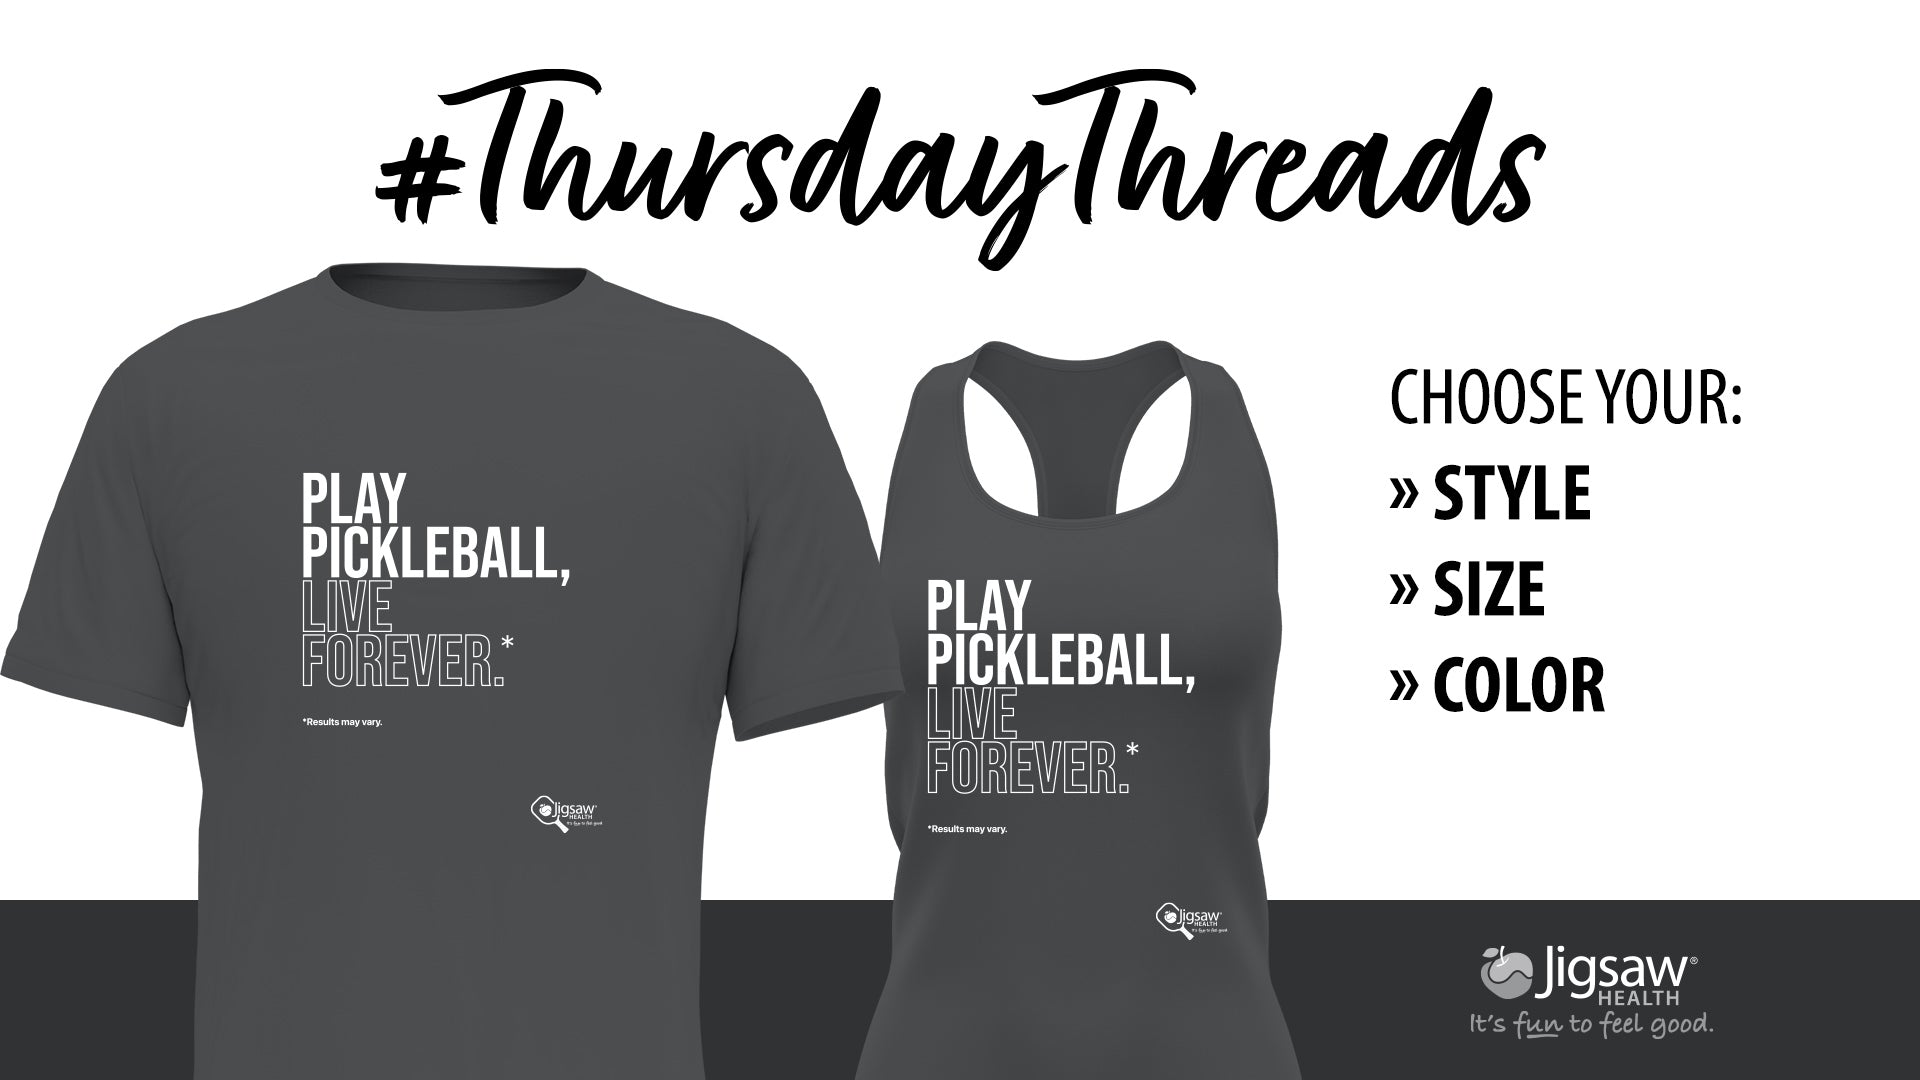 Play Pickleball, Live Forever. #ThursdayThreads